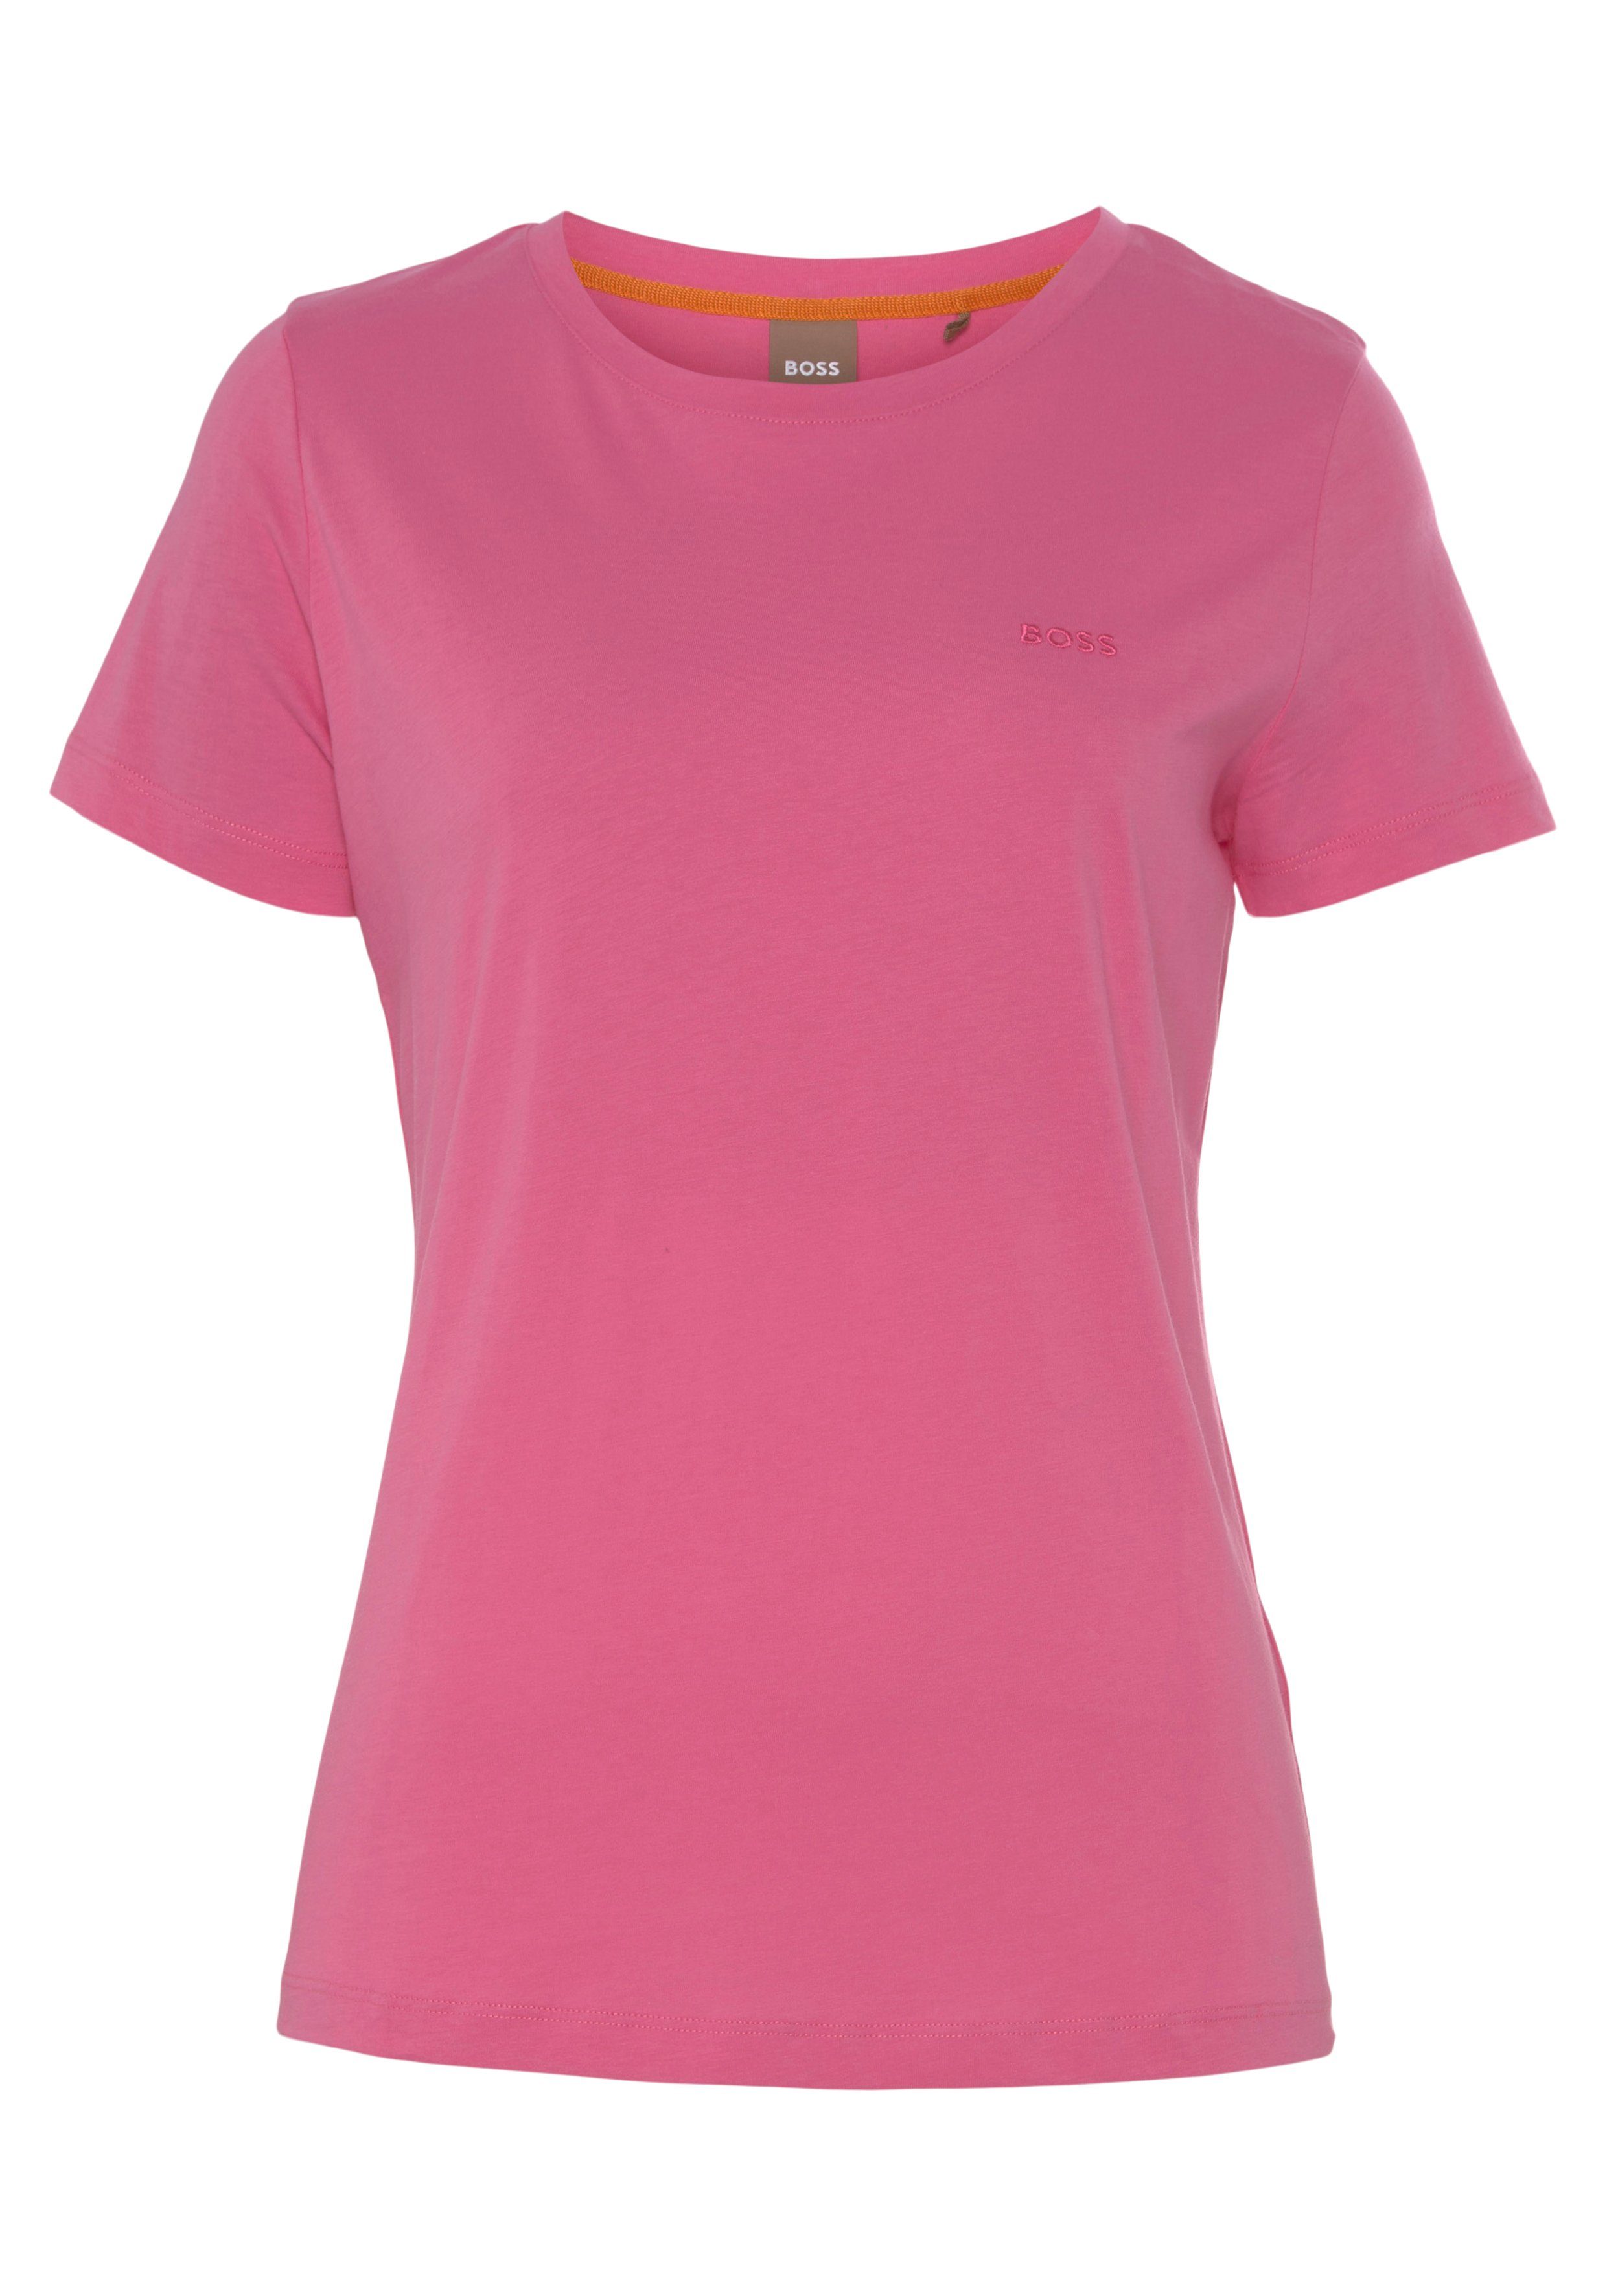 BOSS ORANGE Stoff, mit Premium medium_pink1 Qualität Logostickerei, T-Shirt hochwertiger weicher